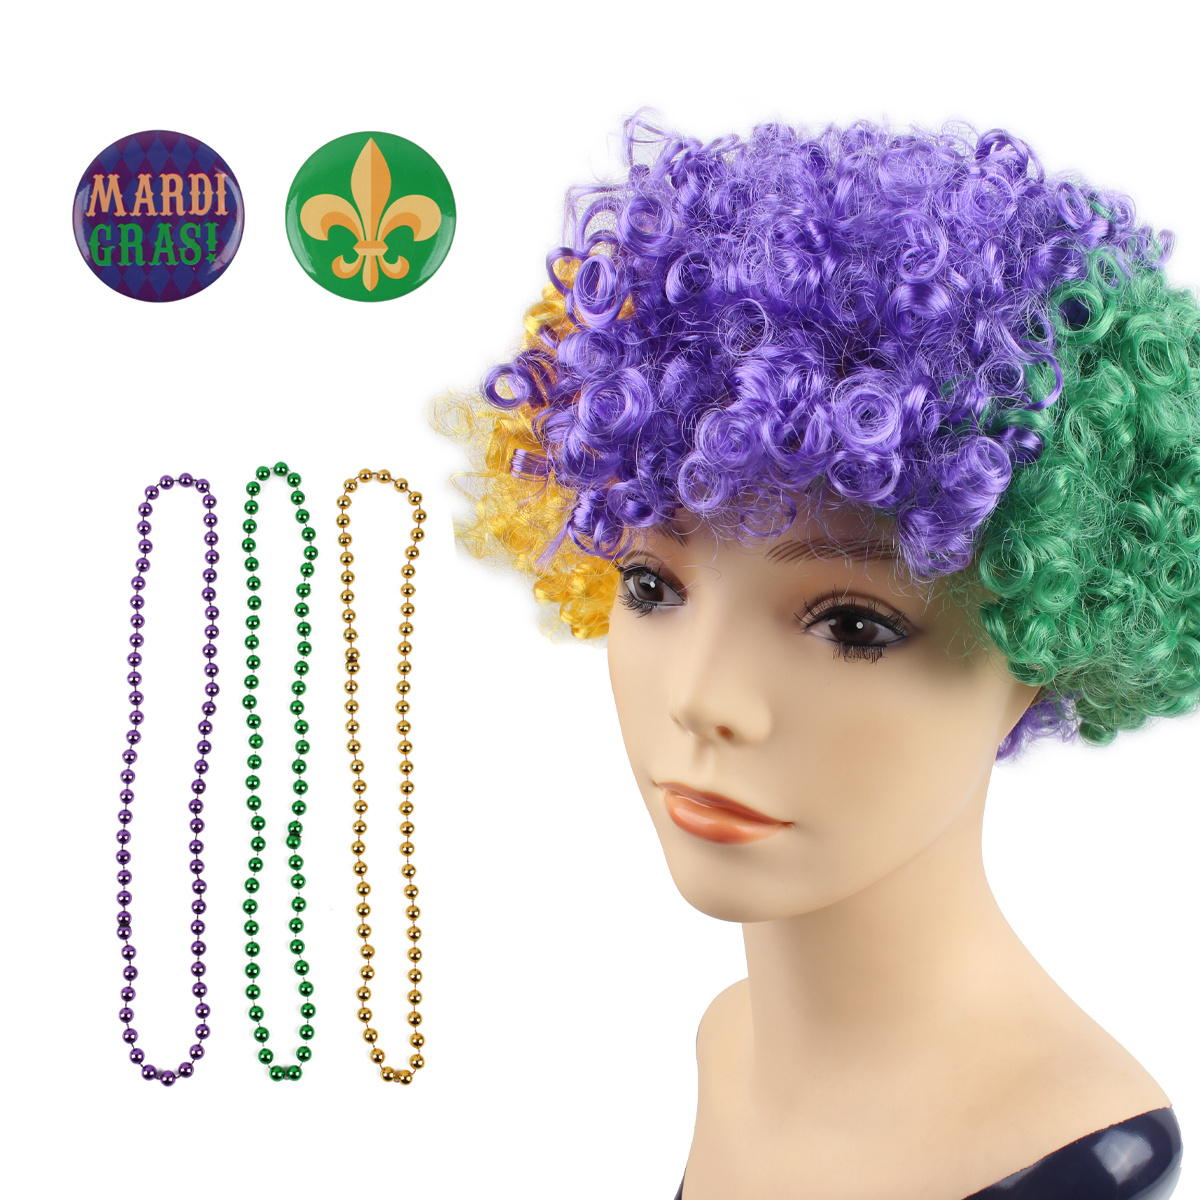 JOYIN 33PCS Mardi Gras Party Supplies with 6 Necklace, LED Mask, Feather Boa,  Headband, Temporary Tattoos